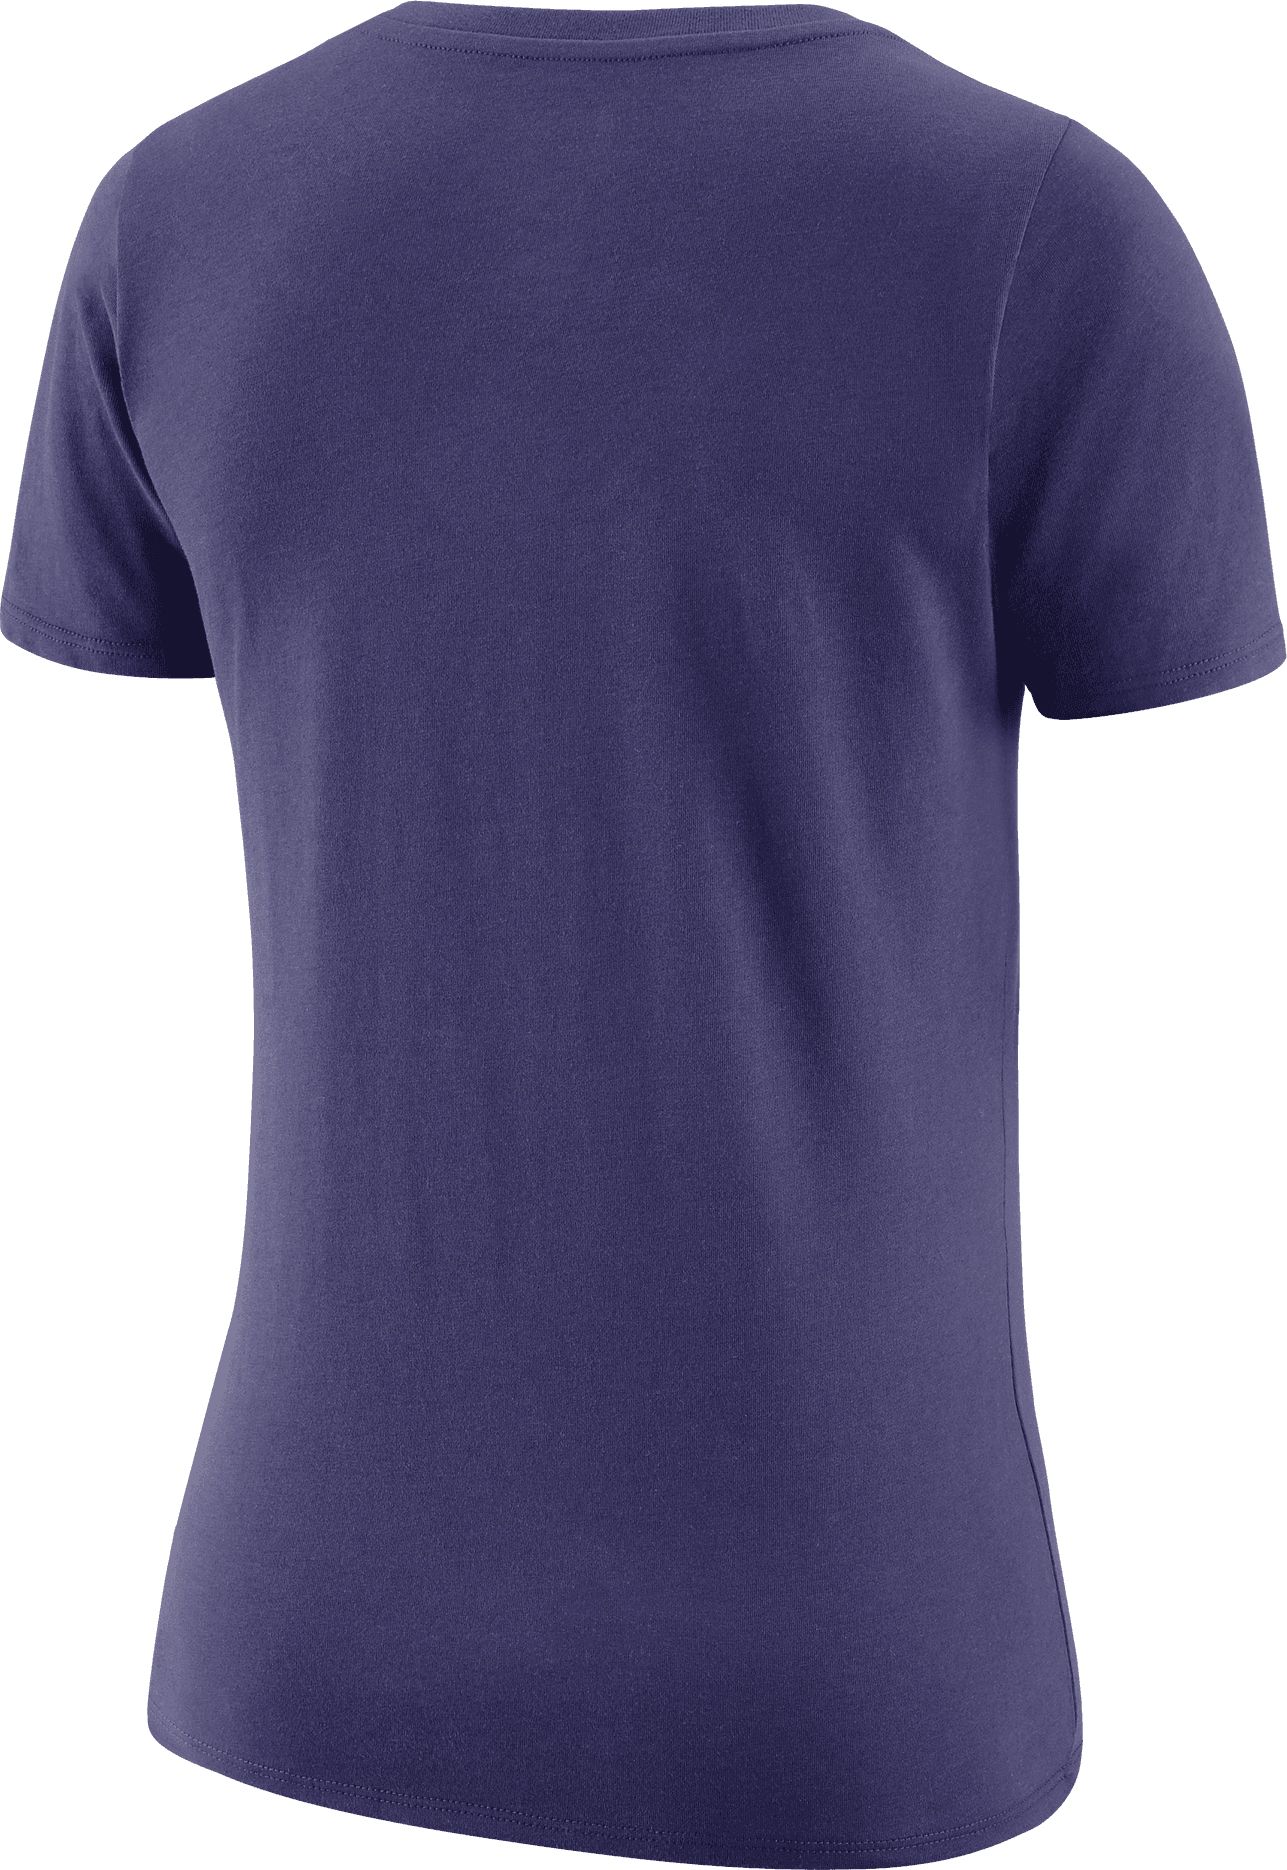 Nike Women's Phoenix Suns Purple Logo V-Neck T-Shirt